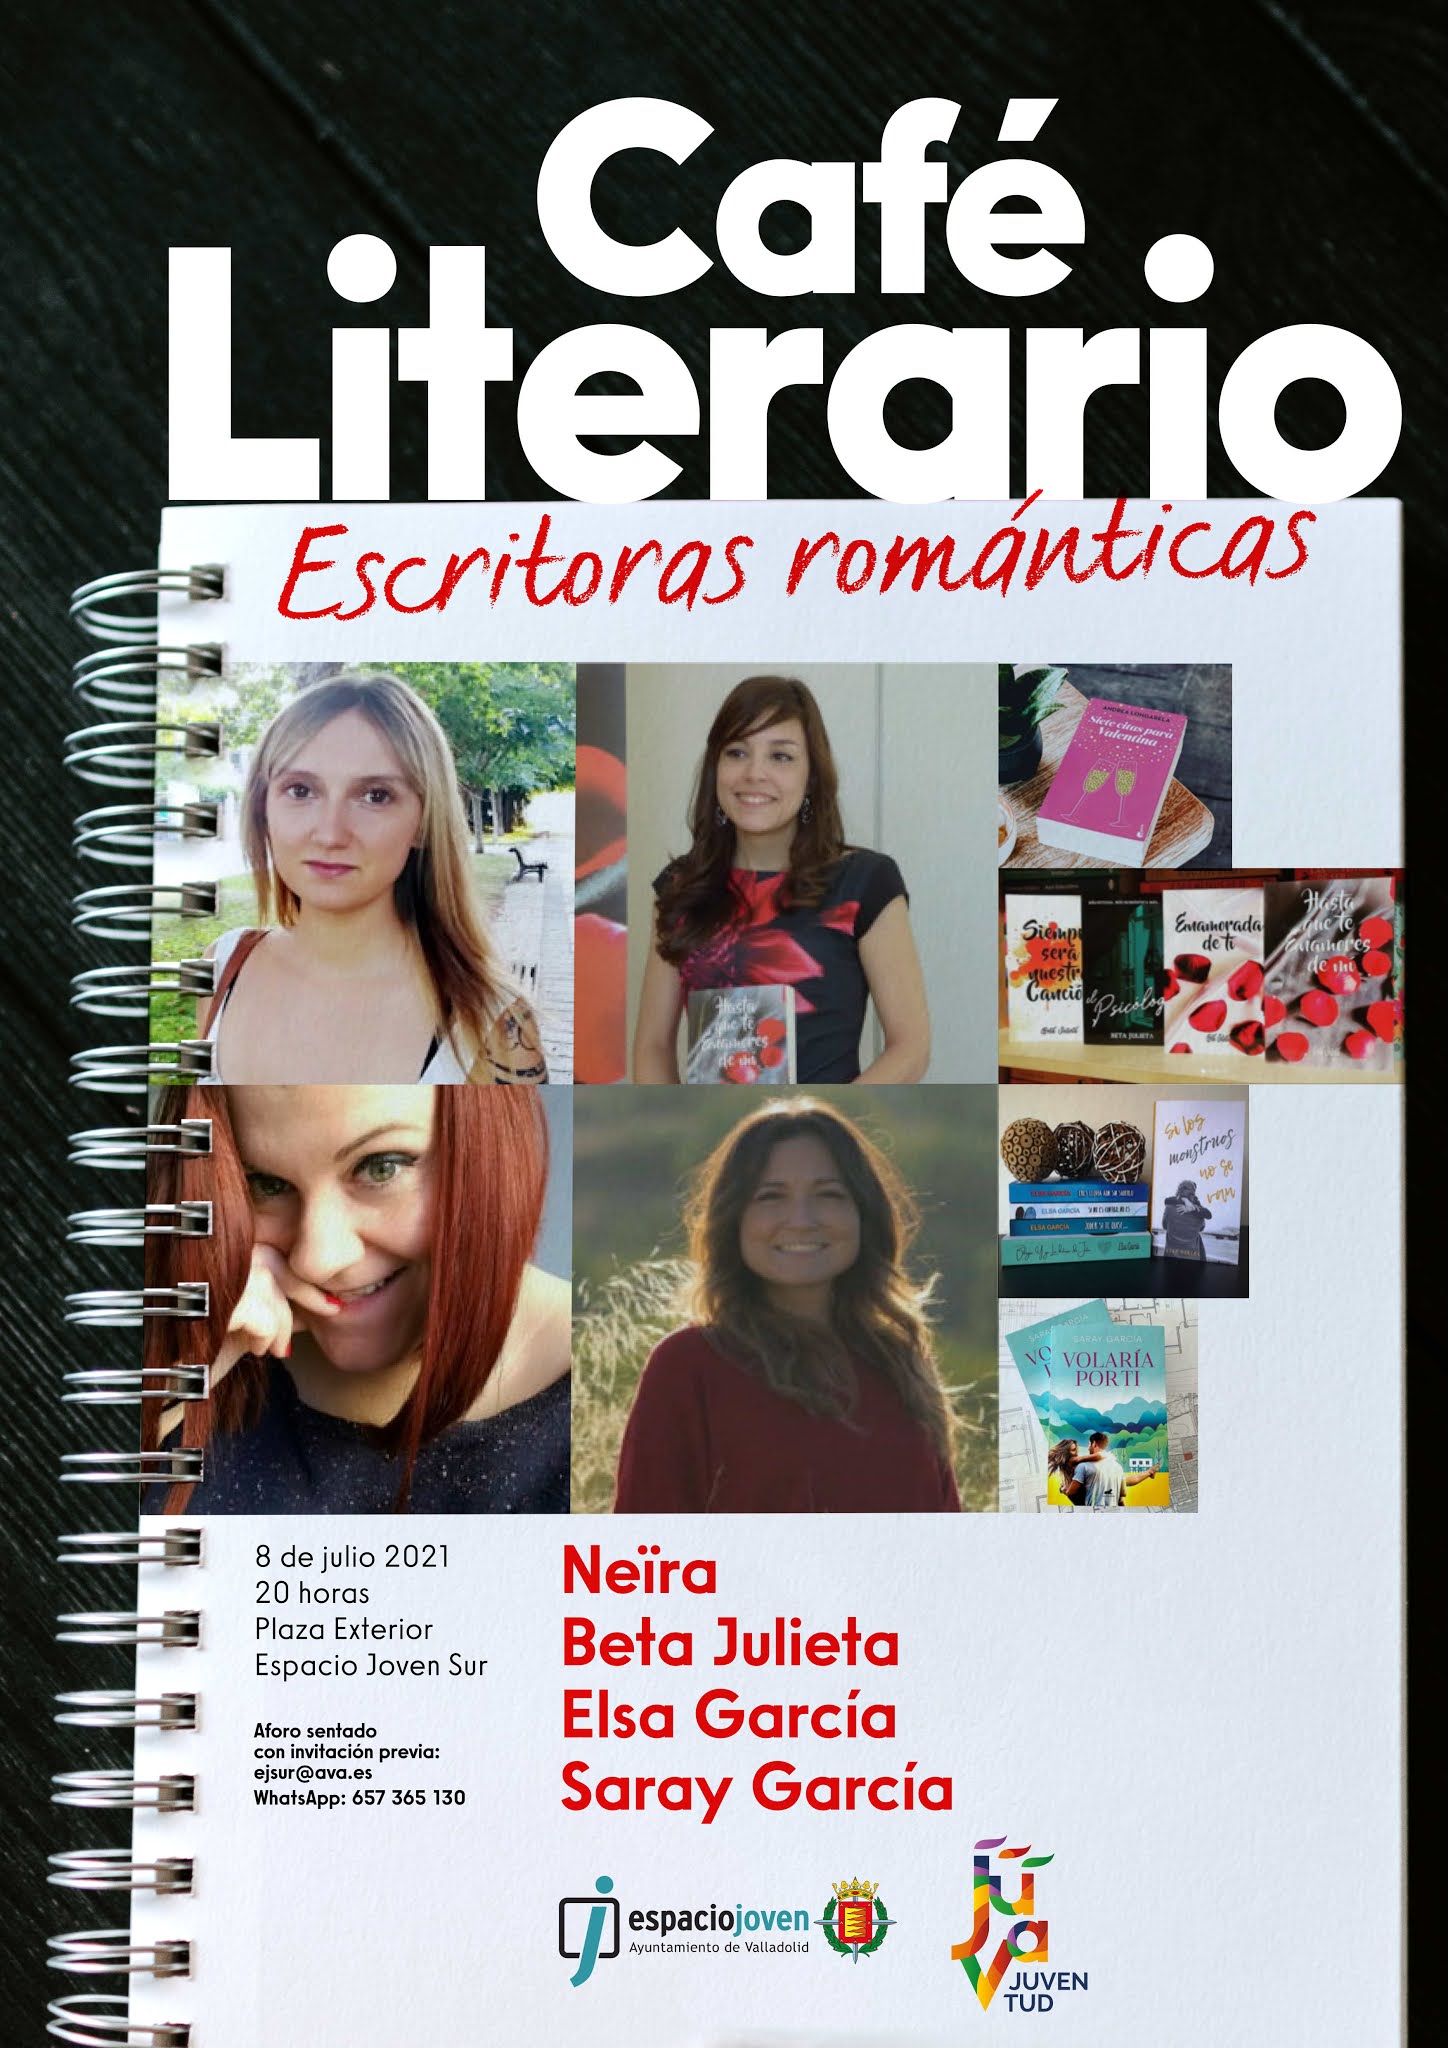 Café Literario en el Espacio Joven Sur de Valladolid. Jueves 8 de julio a las 20:00 h.